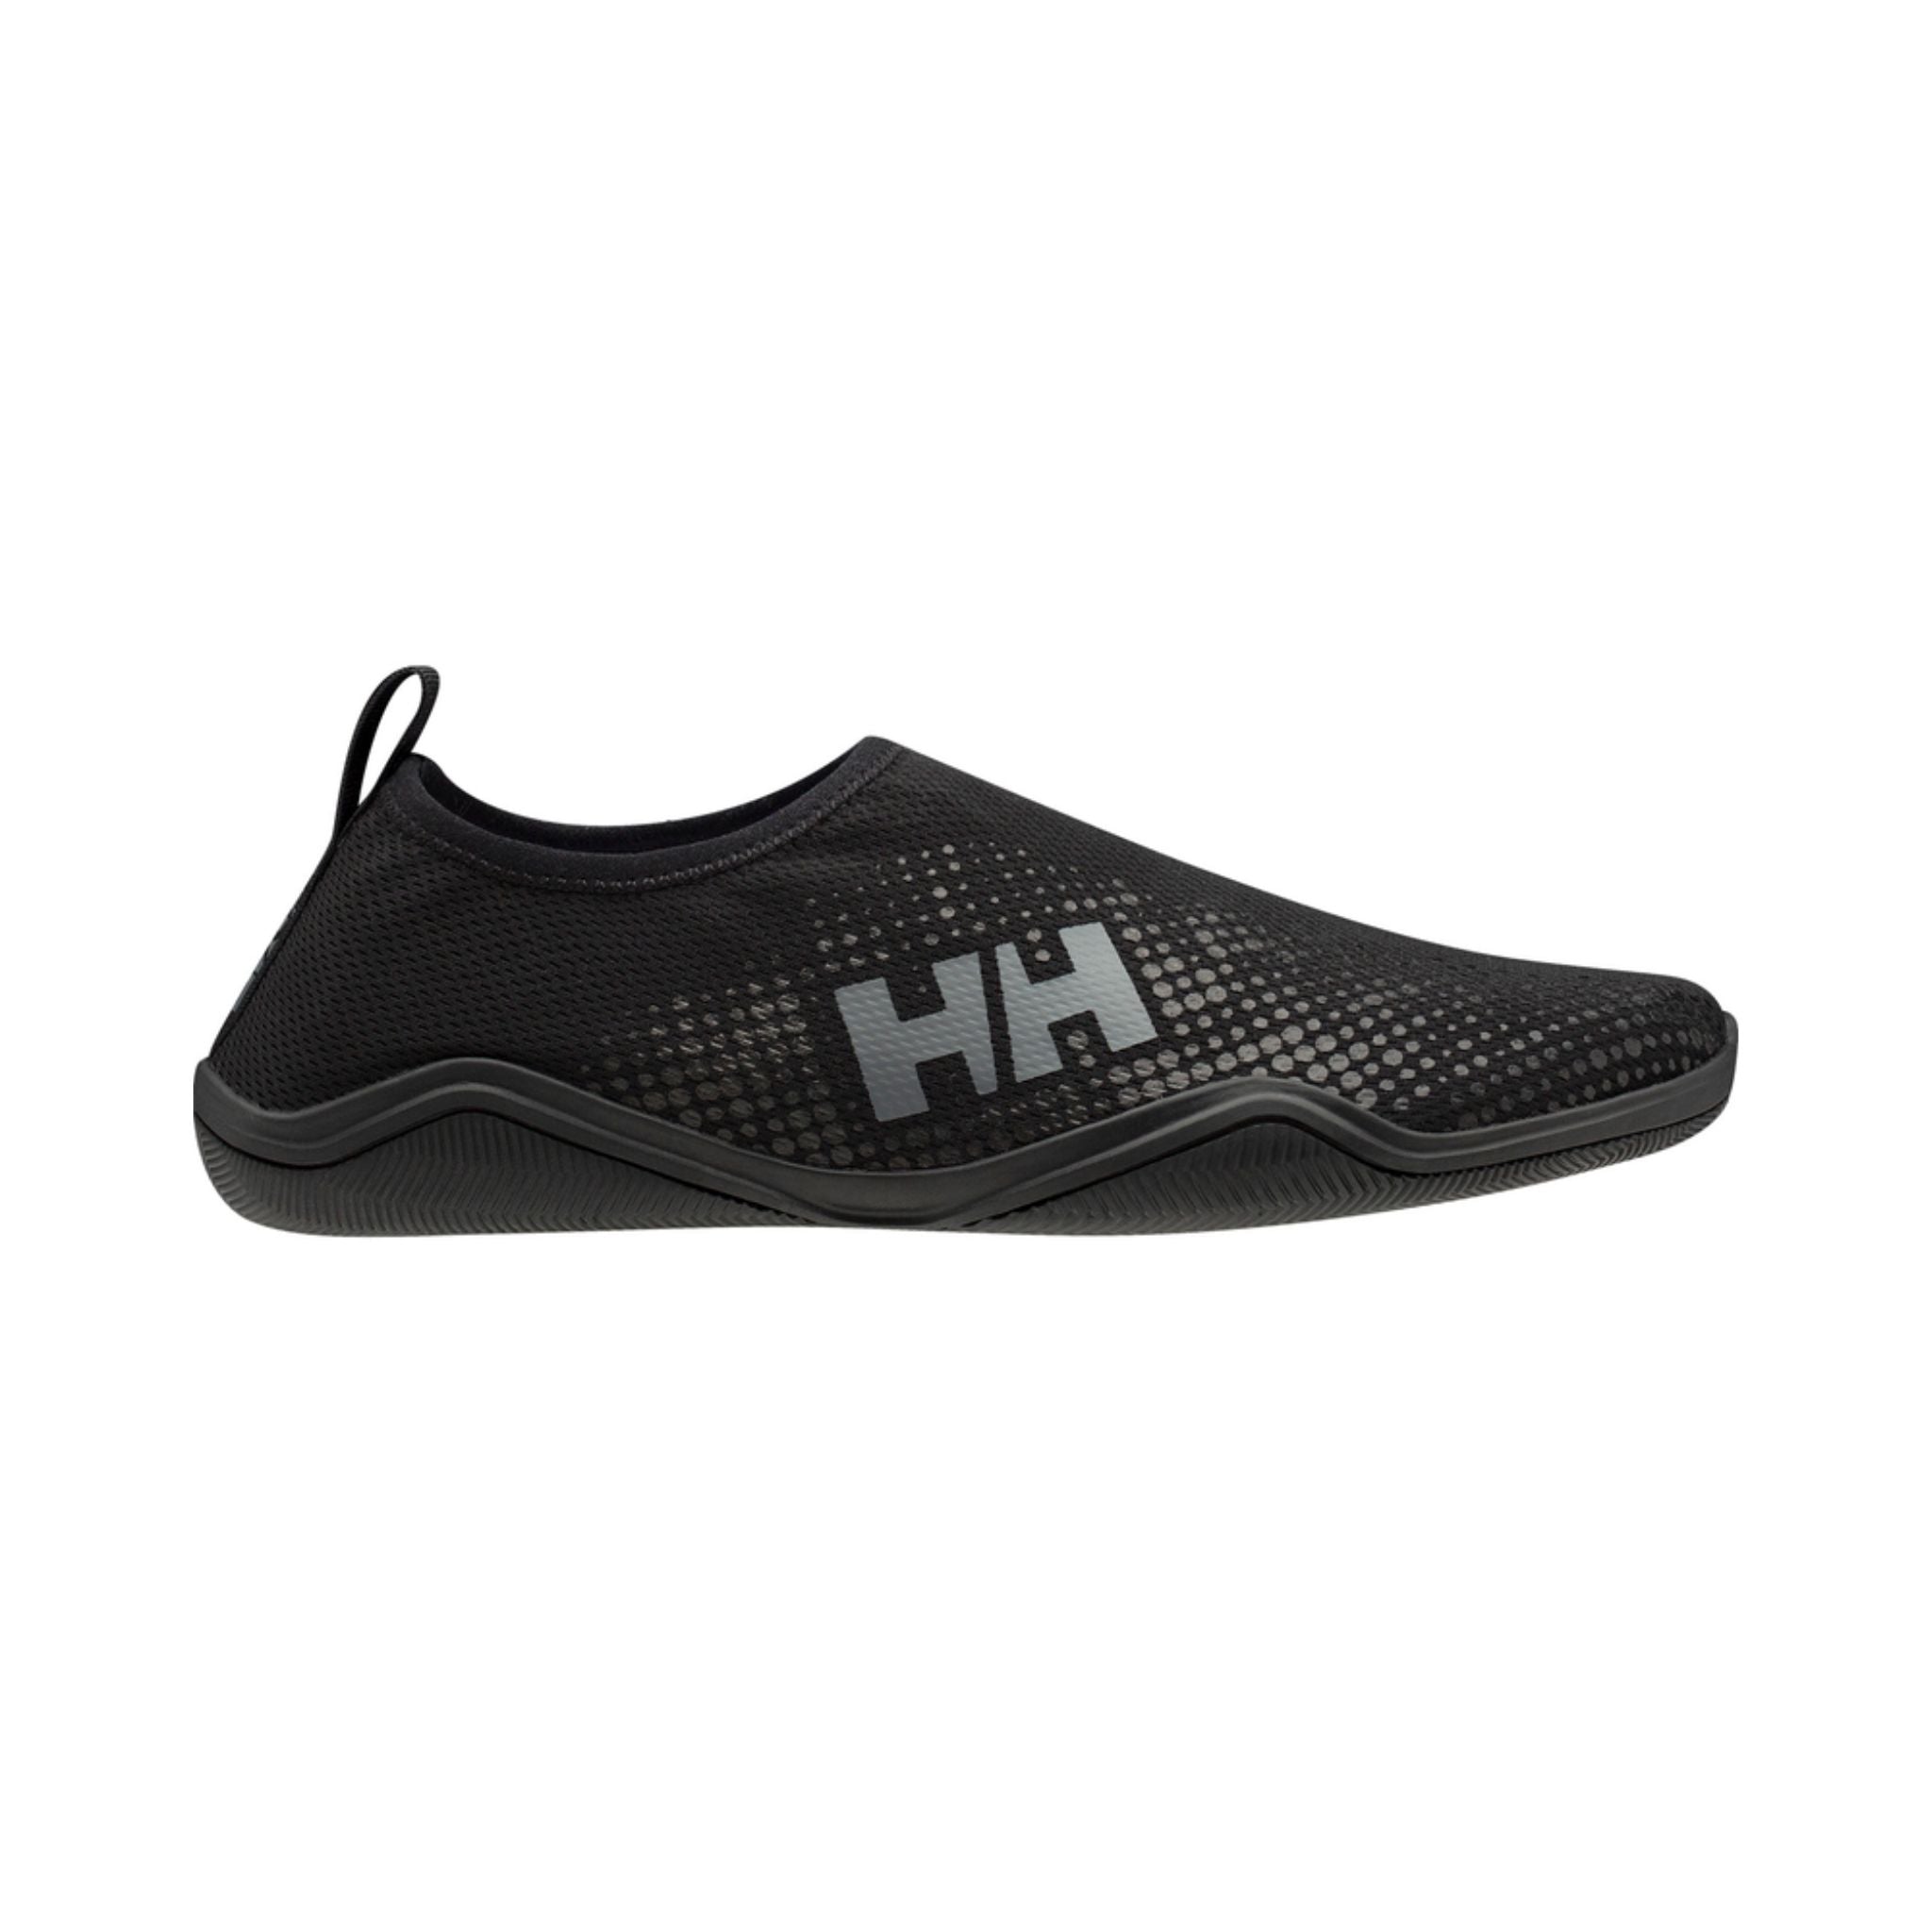 Helly Hansen Crest Watermoc Water Shoe | Helly Hansen | Portwest - The Outdoor Shop